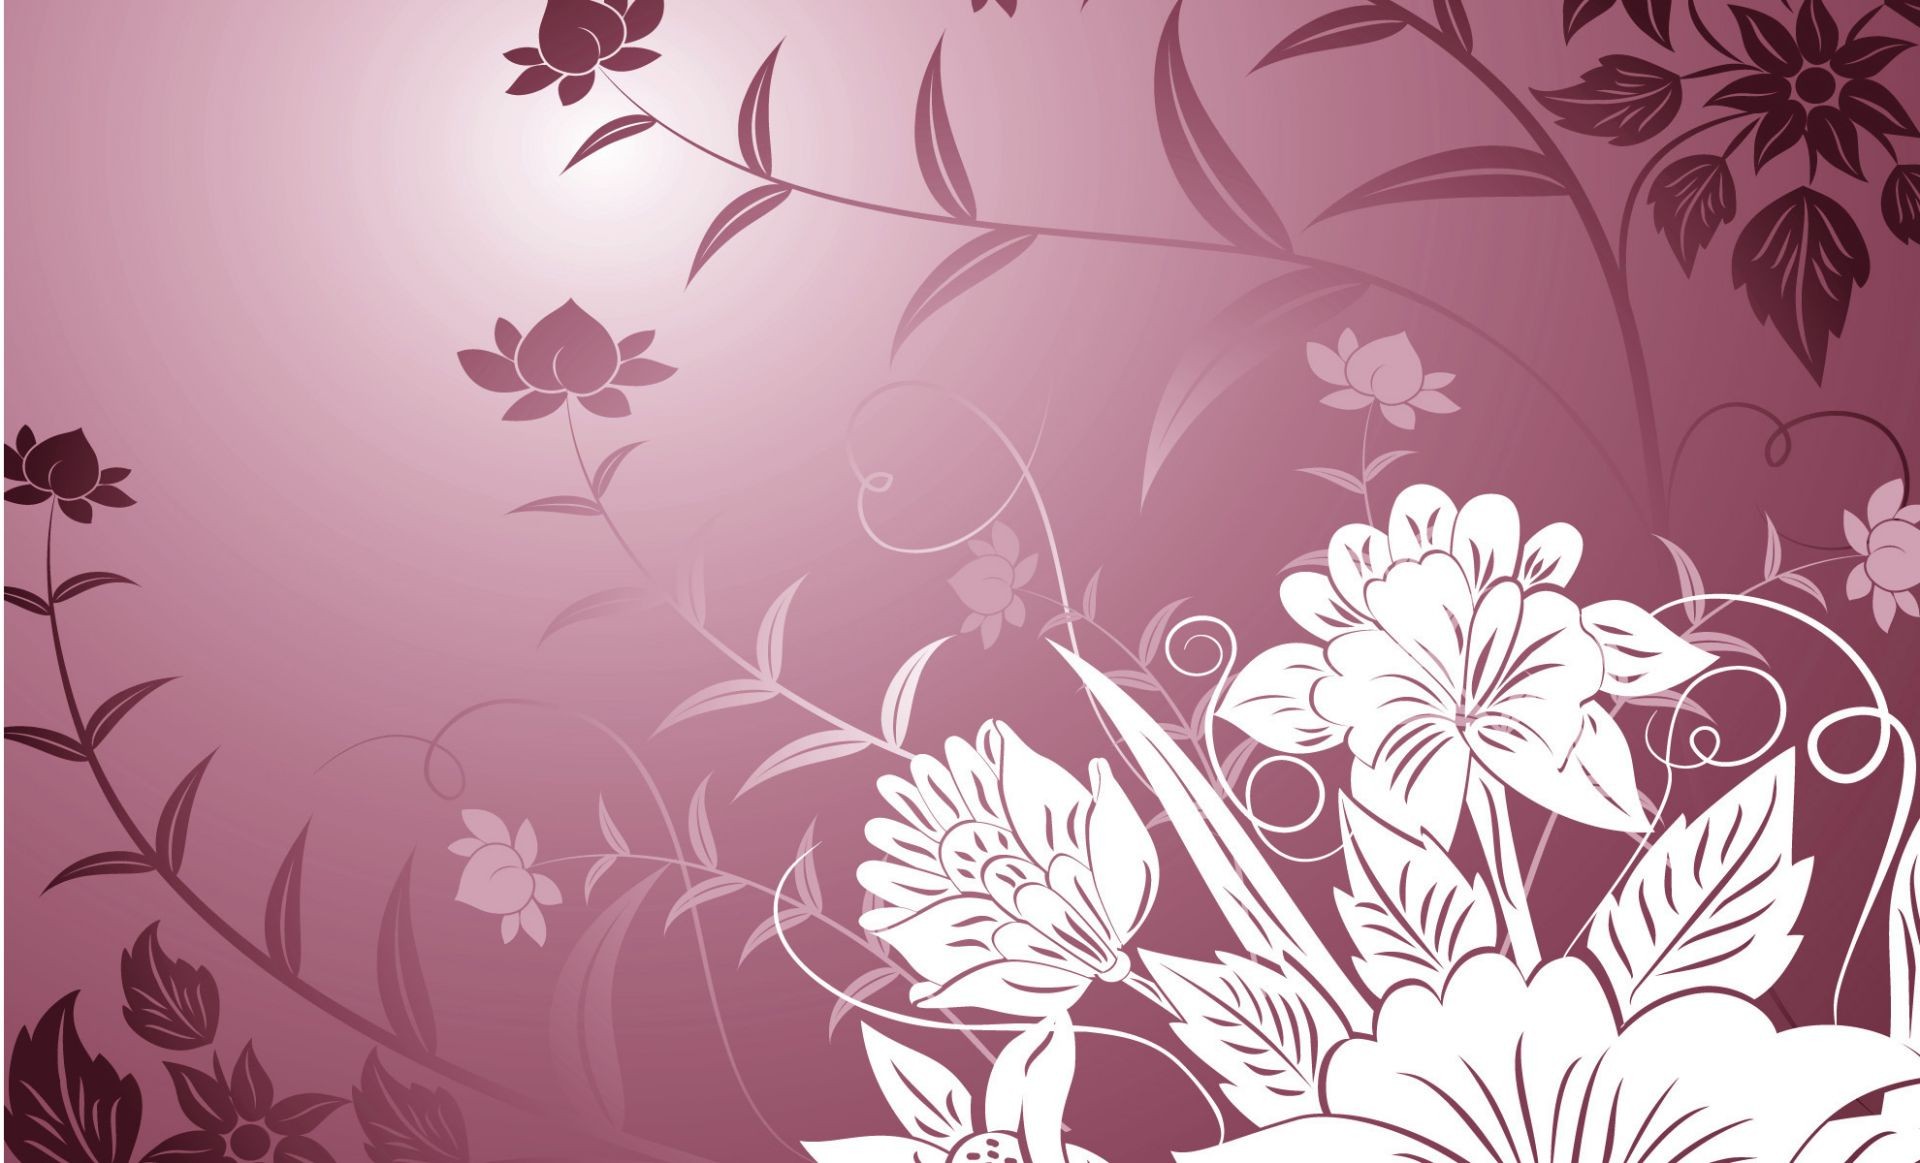 текстуры иллюстрация вектор лист цветочные дизайн украшения витиеватый аннотация цветок элемент кривая флора обои шаблон график рабочего стола загогулина ретро катушка силуэт